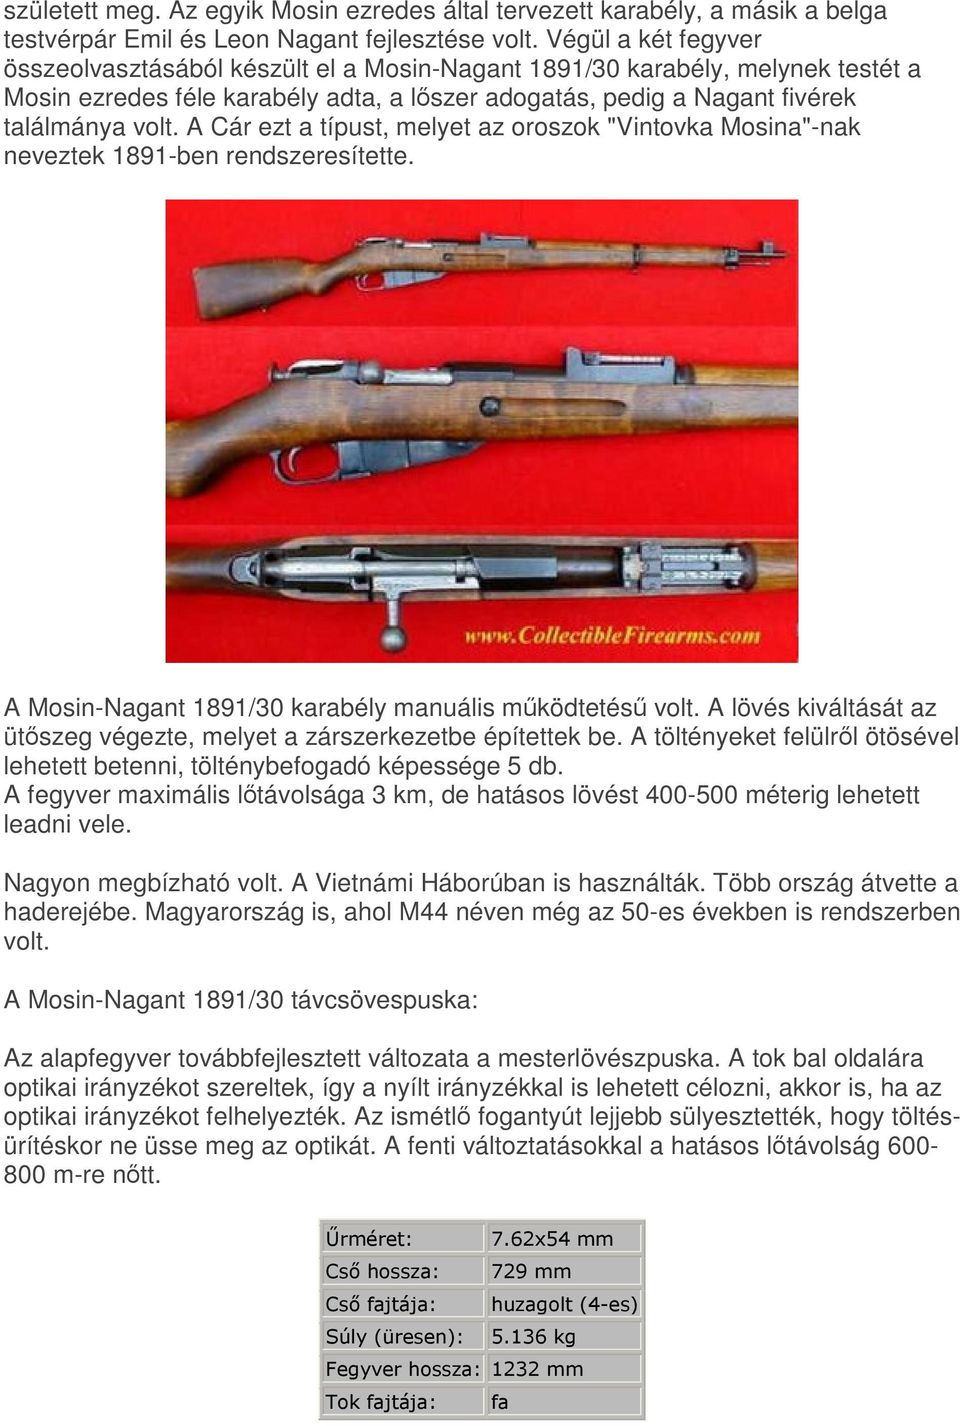 A Cár ezt a típust, melyet az oroszok "Vintovka Mosina"-nak neveztek 1891-ben rendszeresítette. A Mosin-Nagant 1891/30 karabély manuális mködtetés volt.